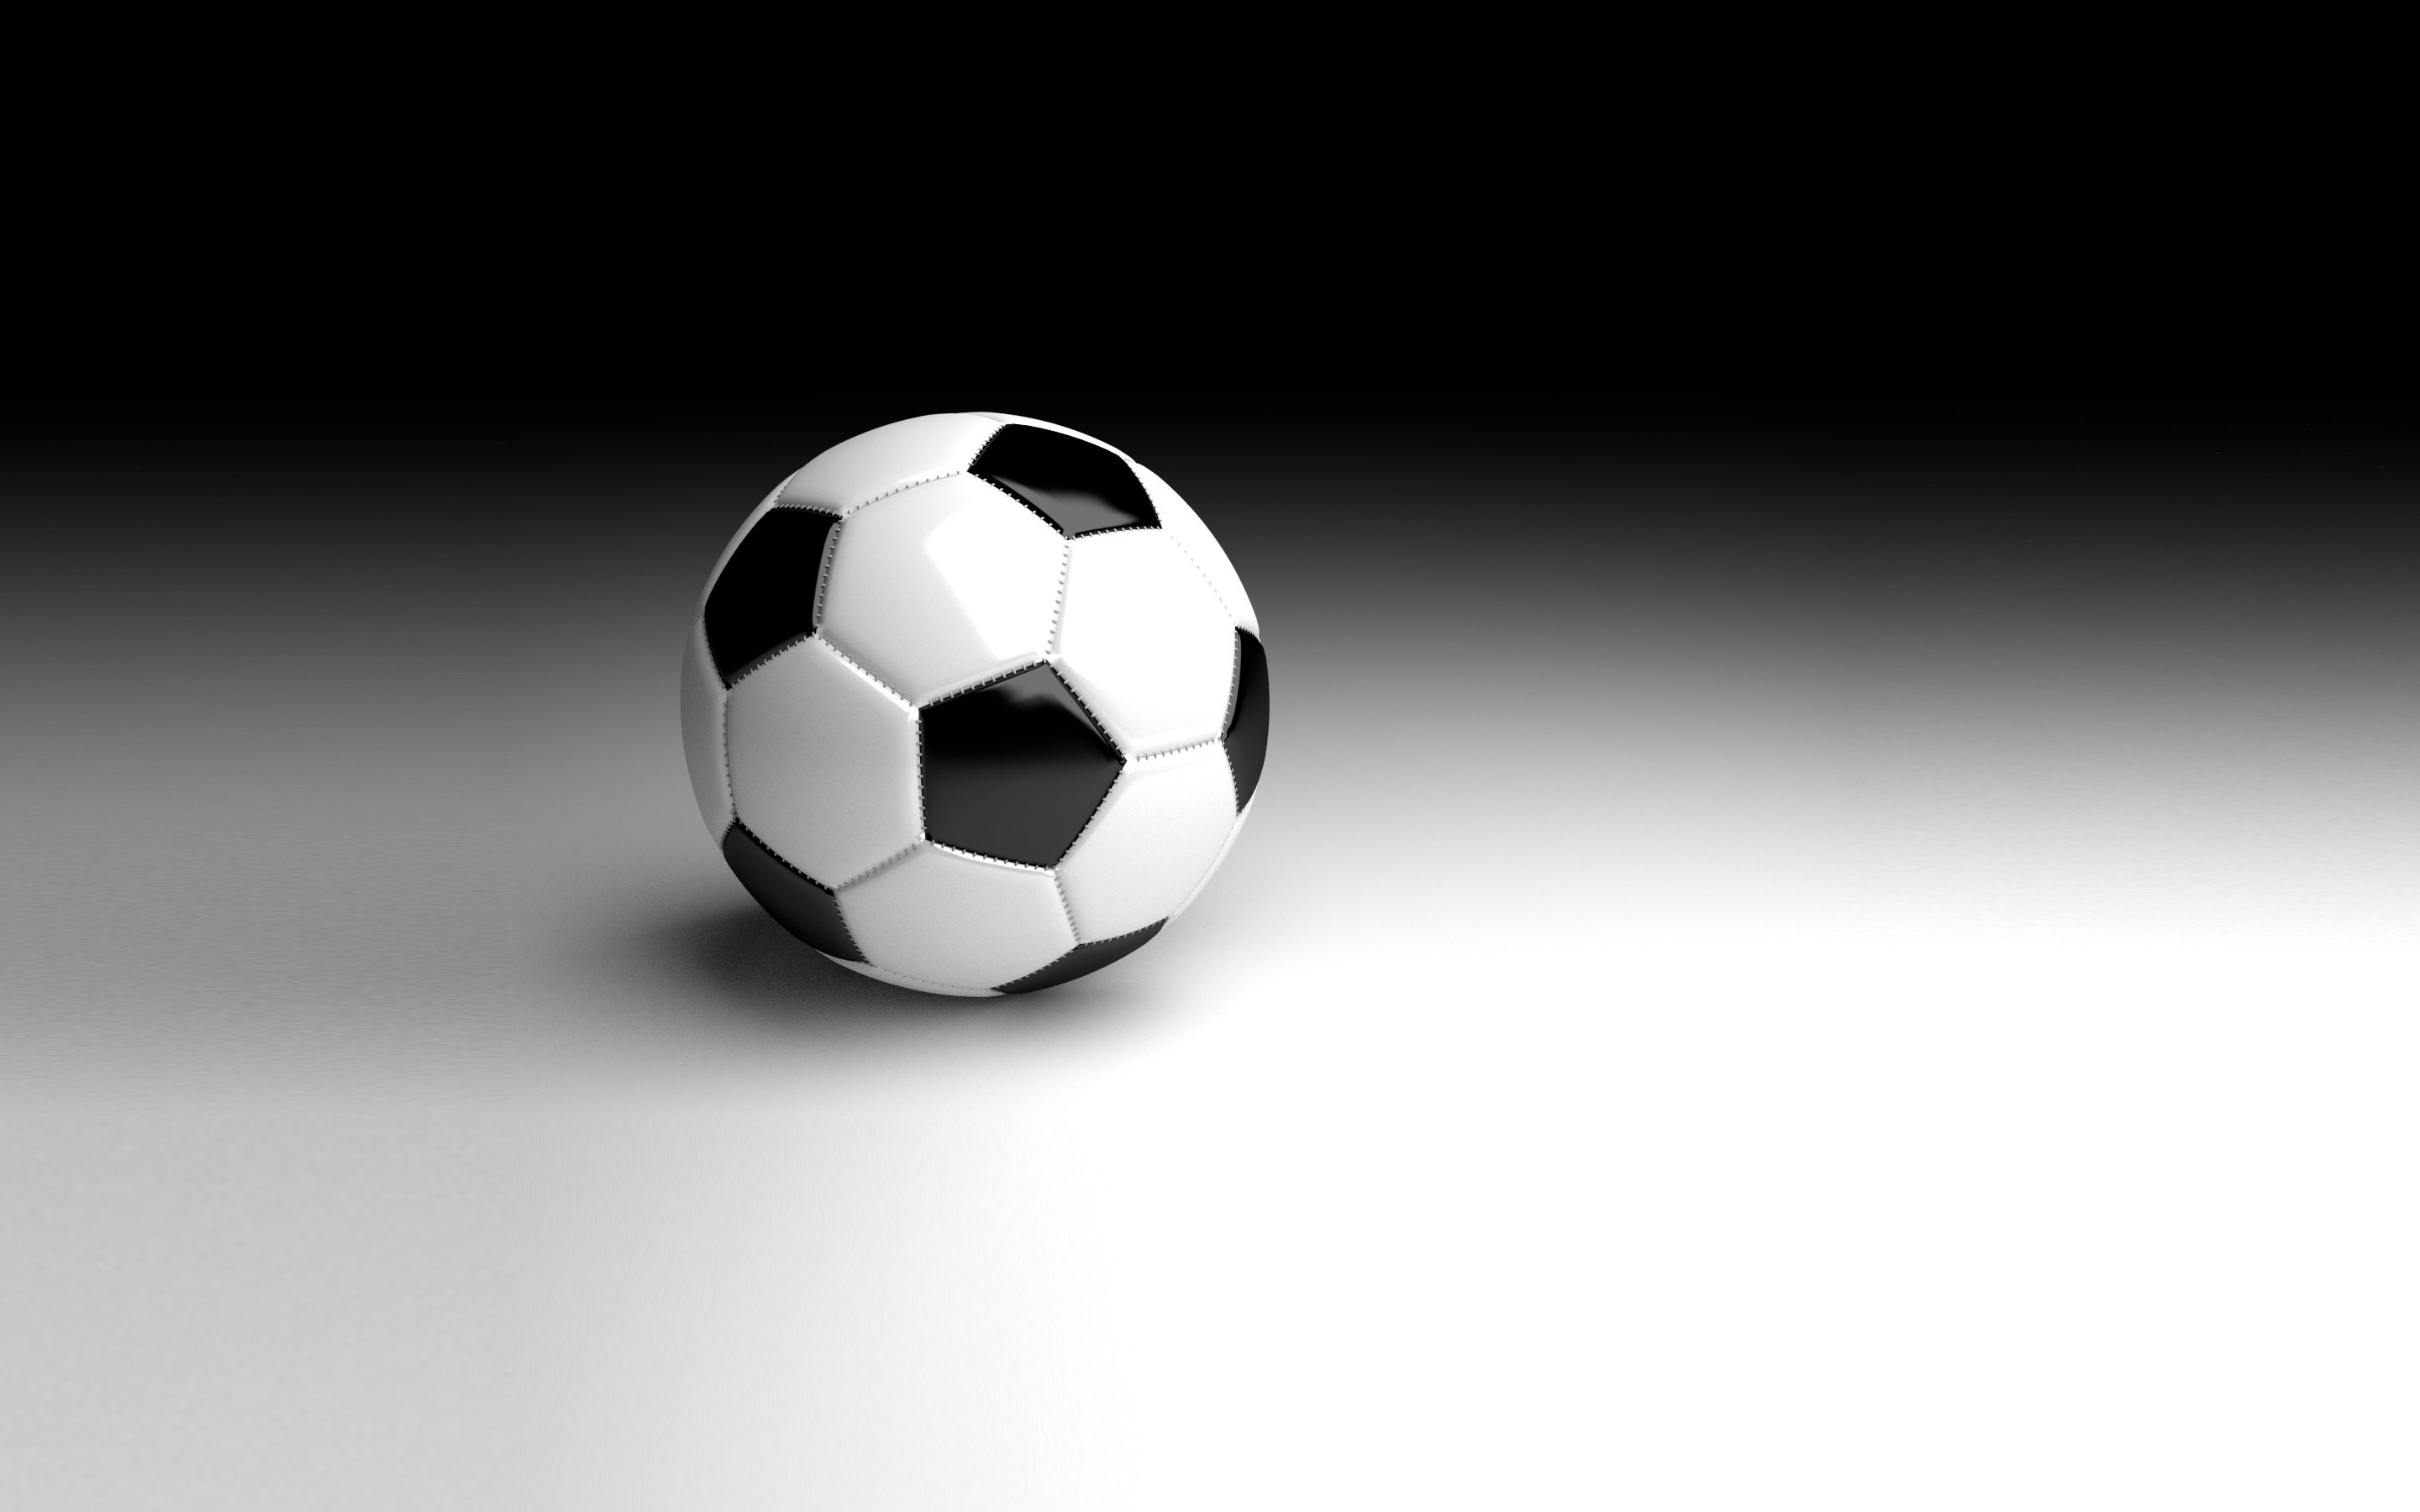 bola de papel tapiz,balón de fútbol,fútbol americano,equipo deportivo,pallone,fútbol